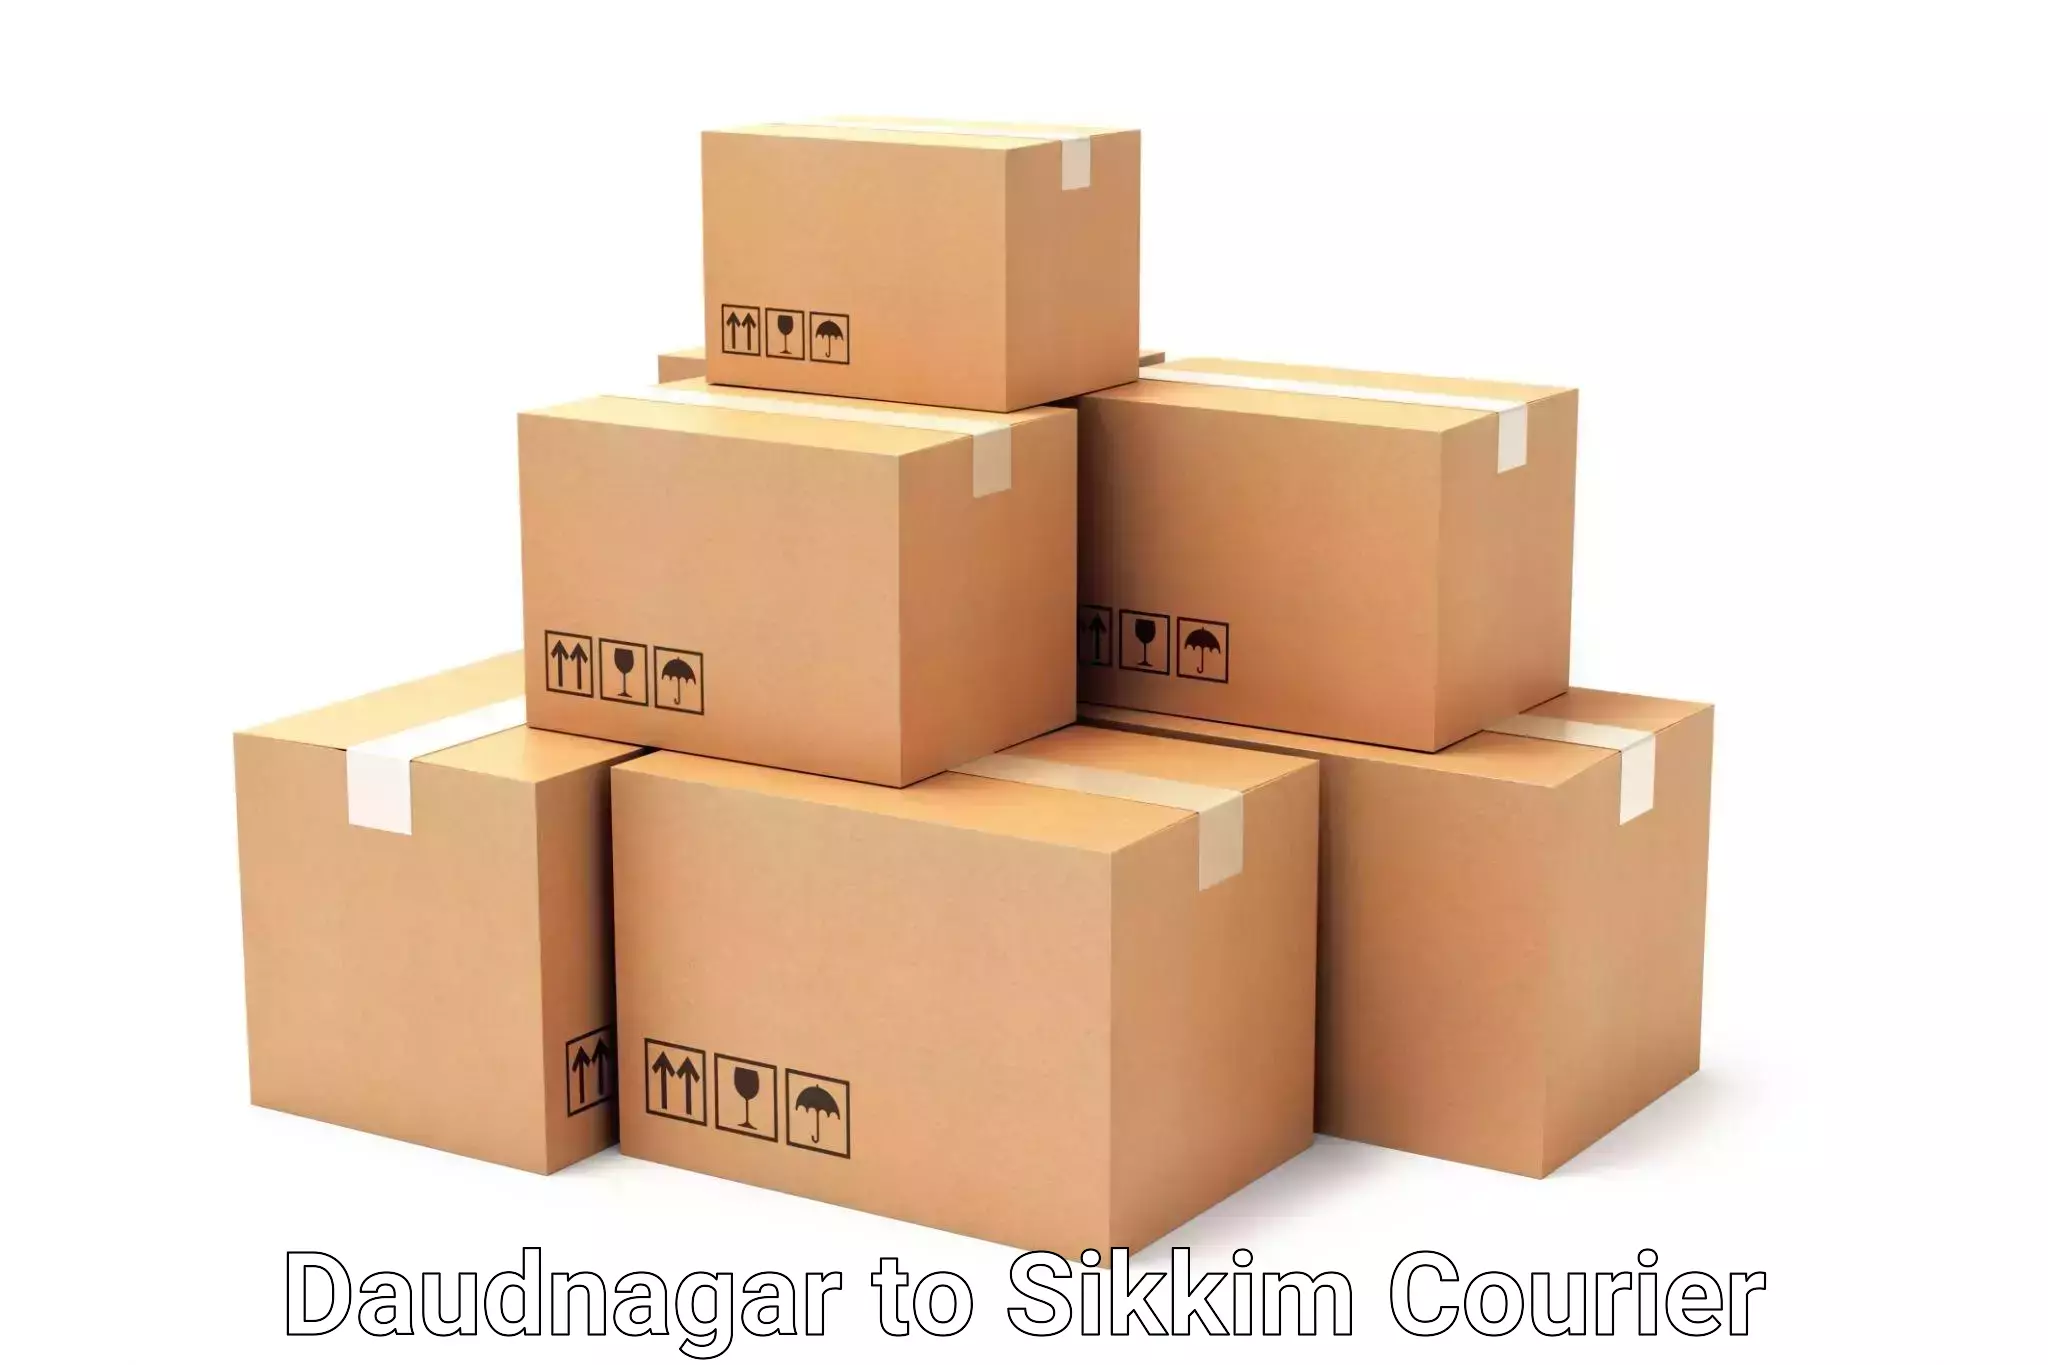 Luggage shipping service Daudnagar to Geyzing